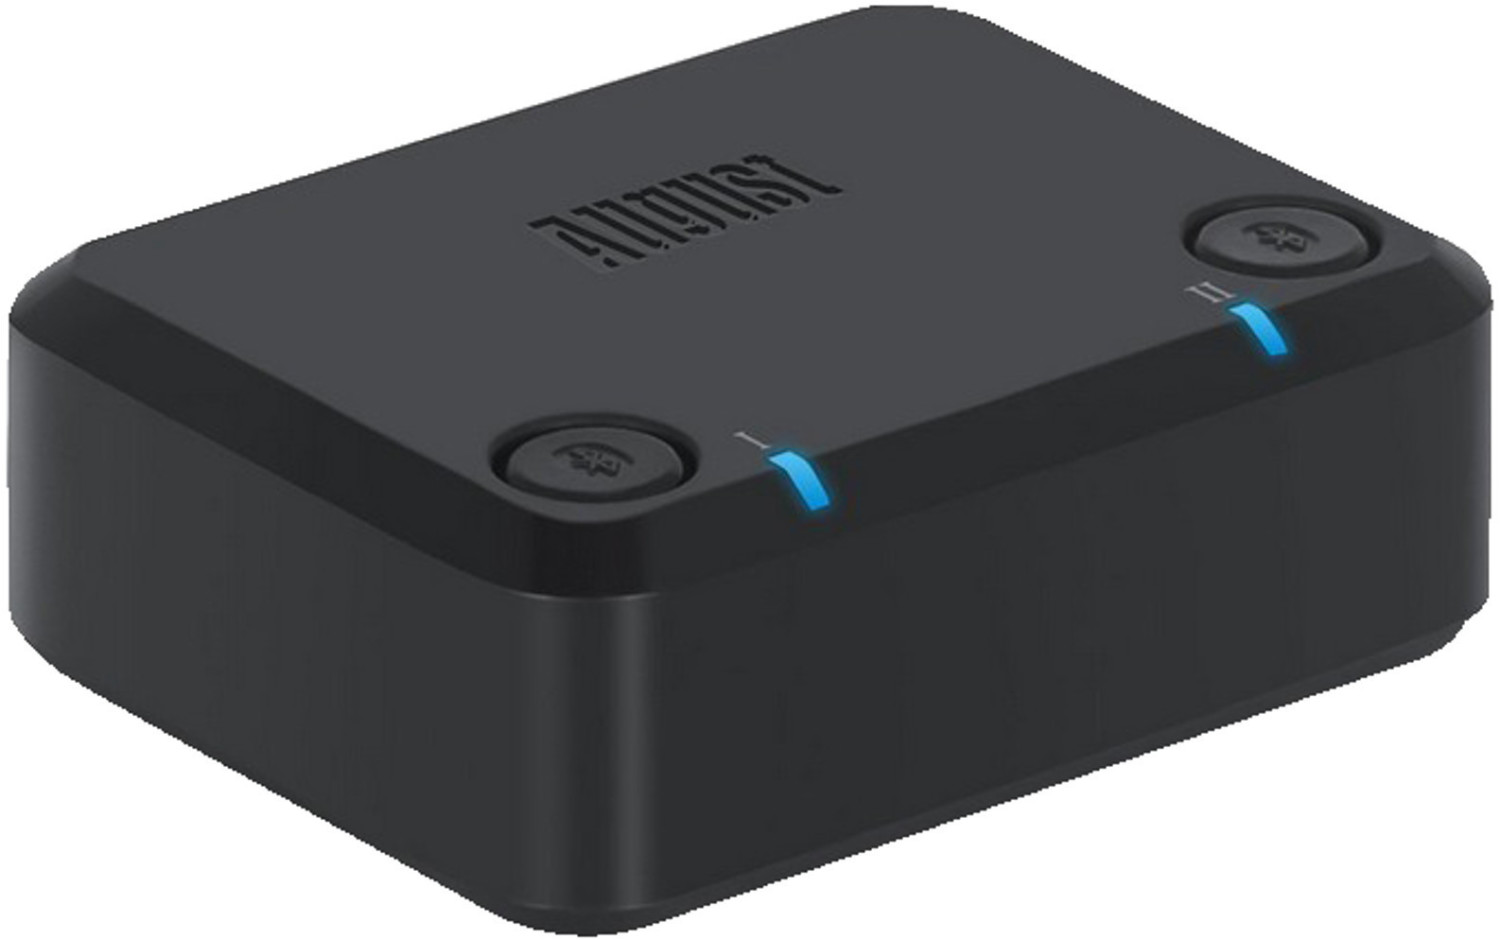 Adaptateur Bluetooth TV HD pour 2 – August MR270 – Transmetteur